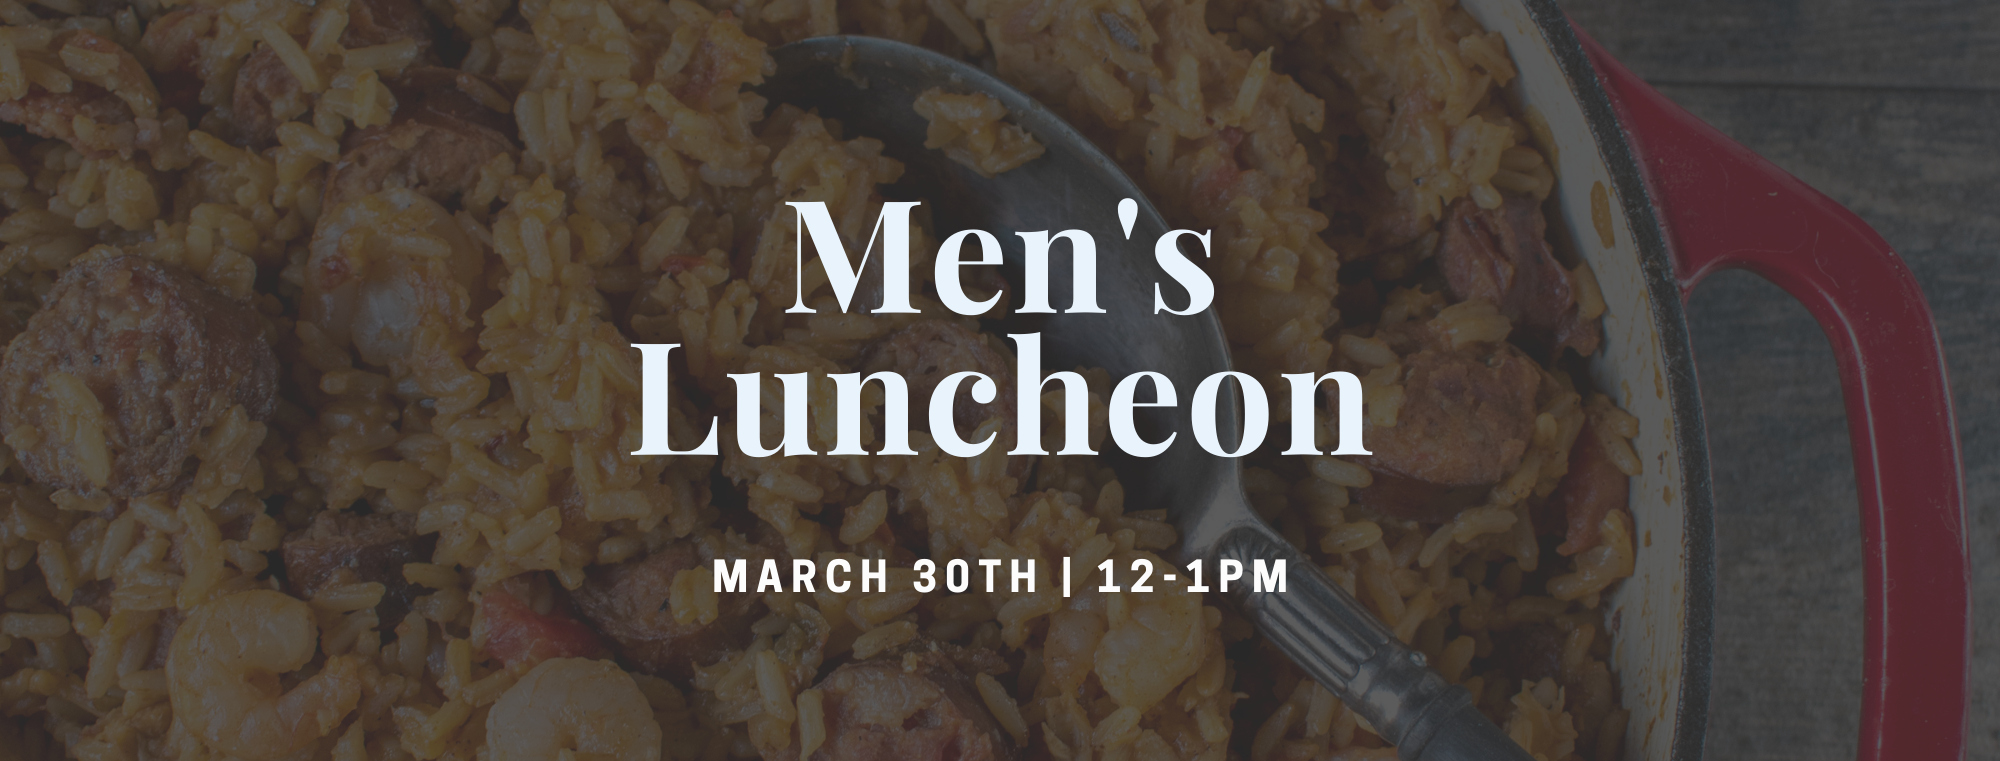 Men's Luncheon